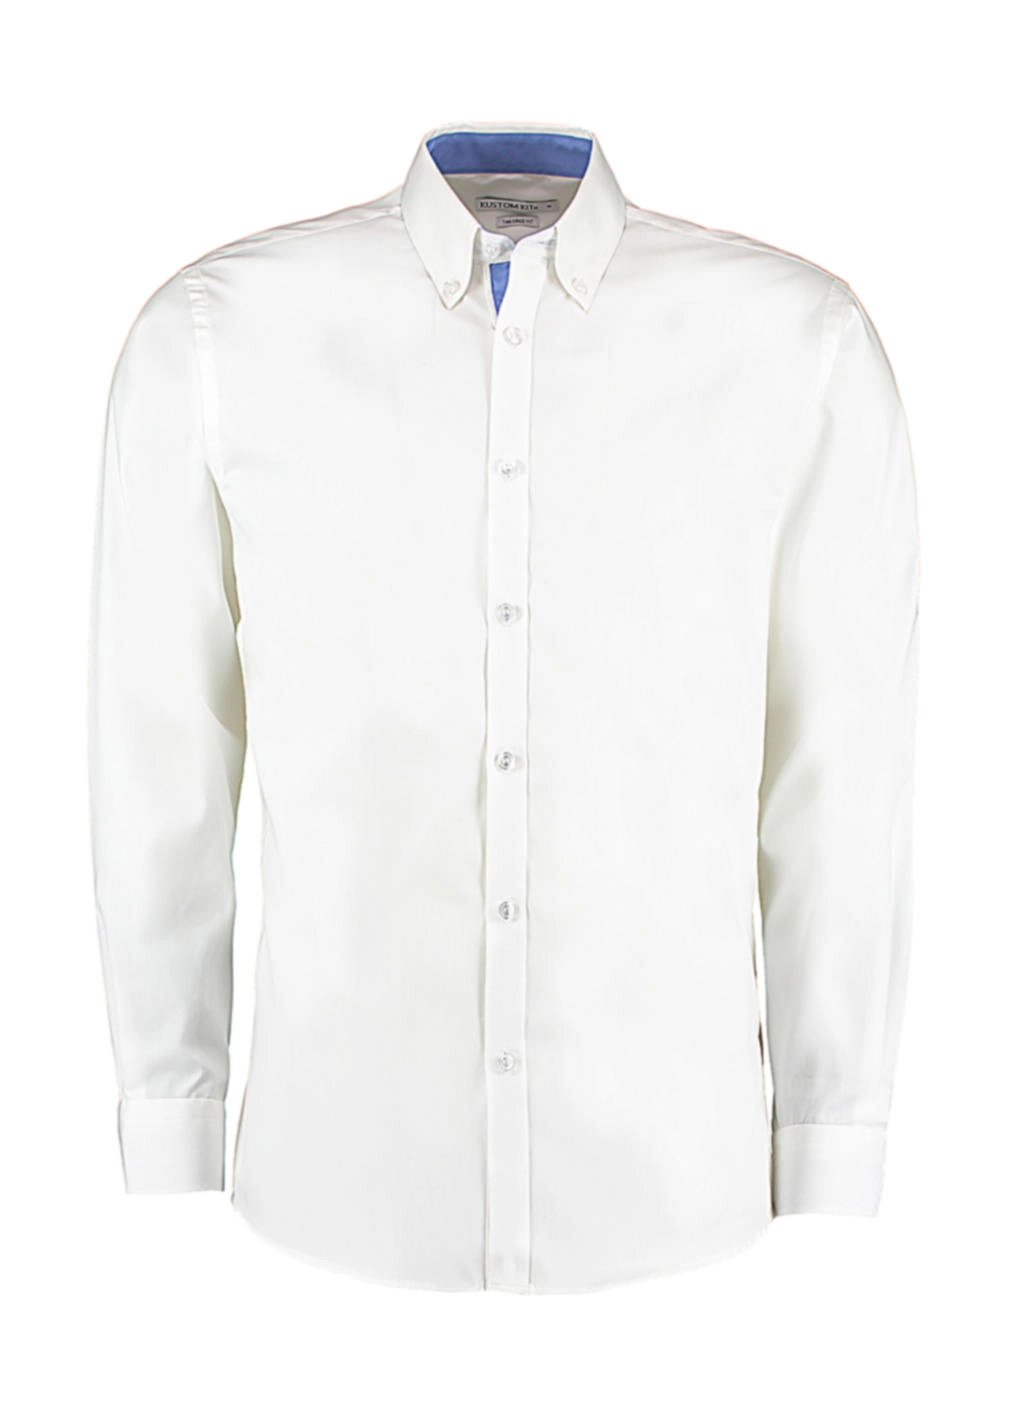 Tailored Fit Premium Contrast Oxford Shirt zum Besticken und Bedrucken in der Farbe White/Mid Blue mit Ihren Logo, Schriftzug oder Motiv.